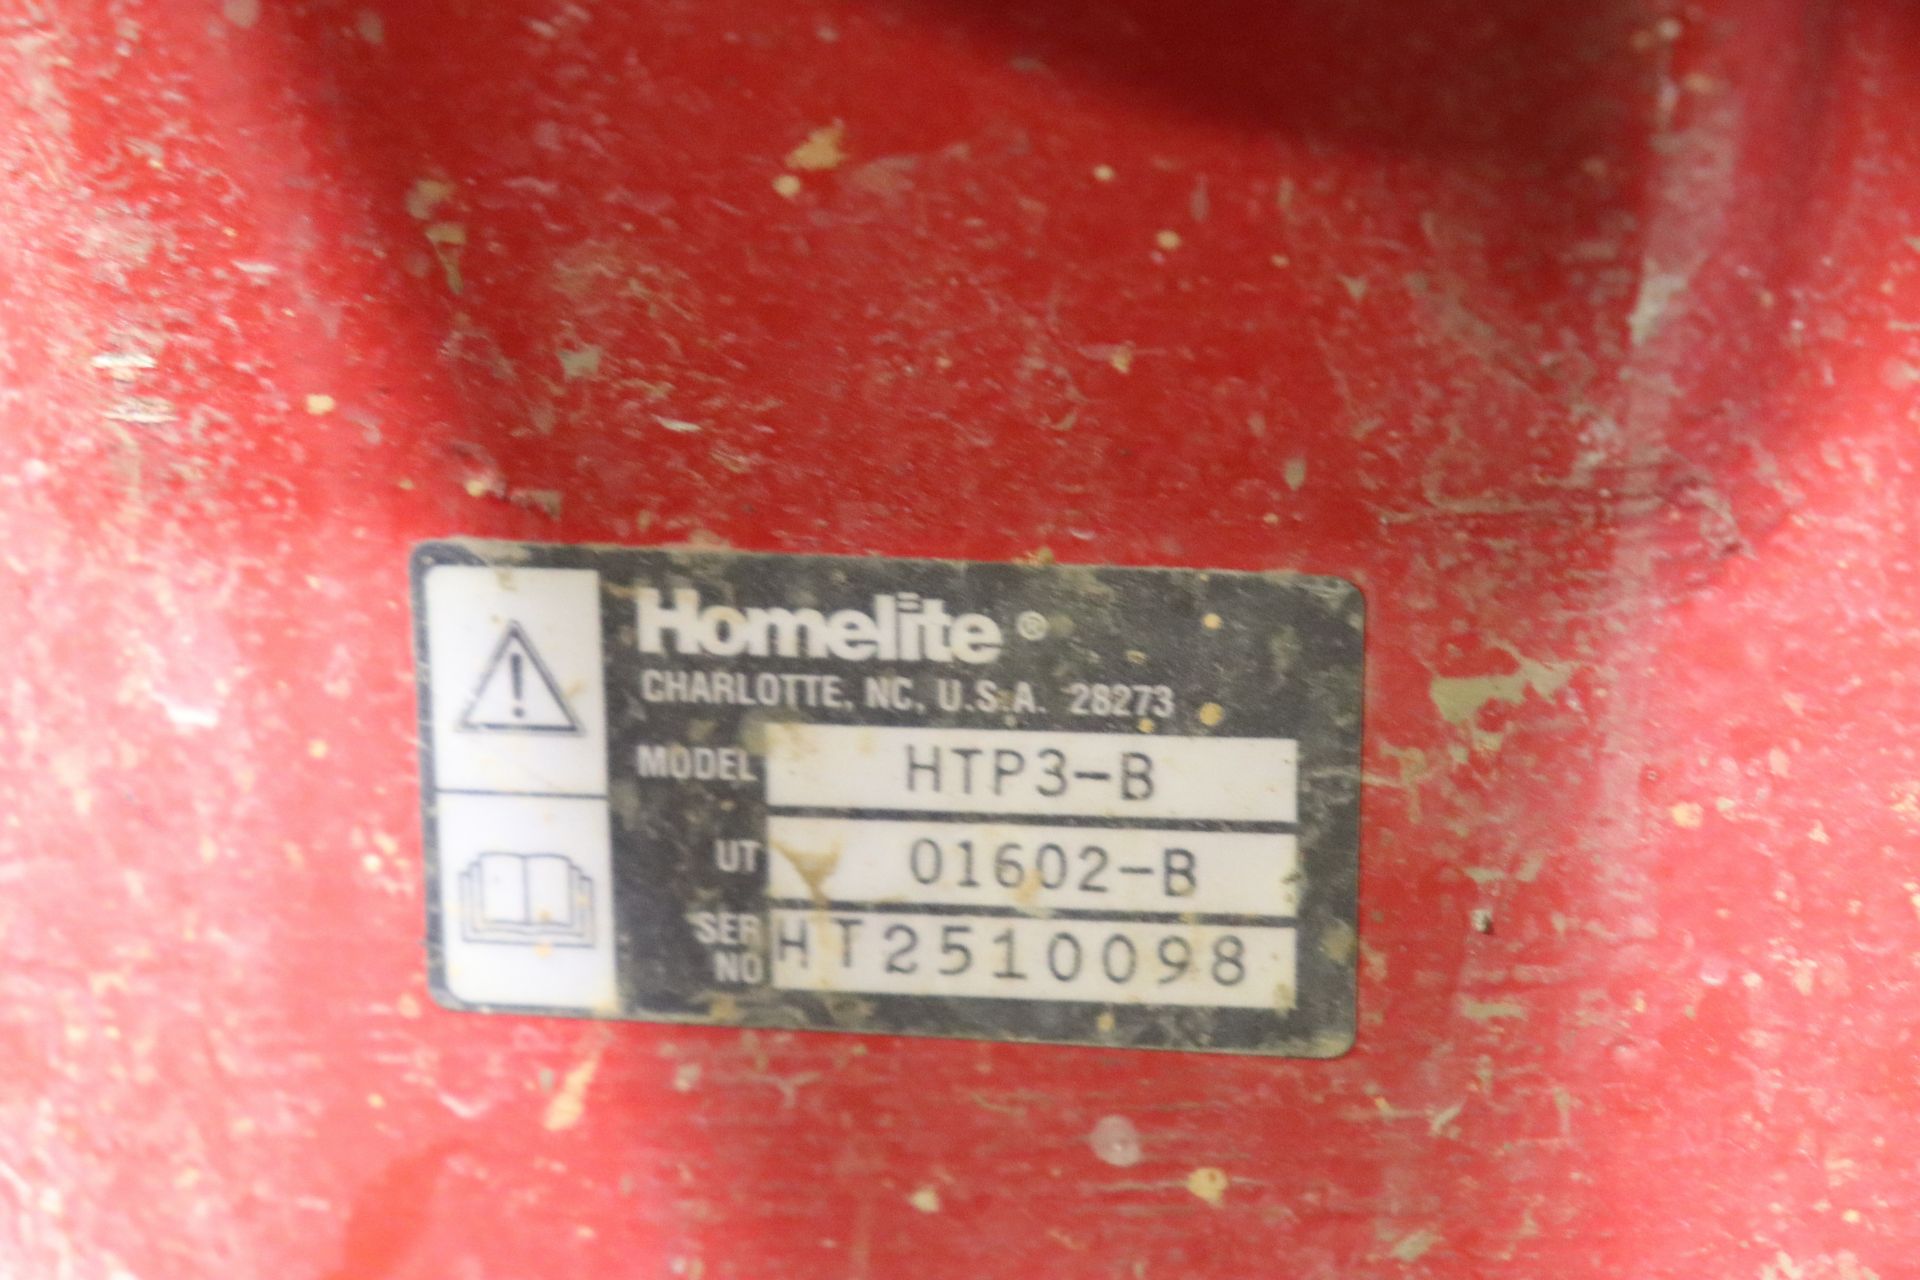 Homelite 3" trash pump, model HTP/B, serial HT2510098 - Image 3 of 4